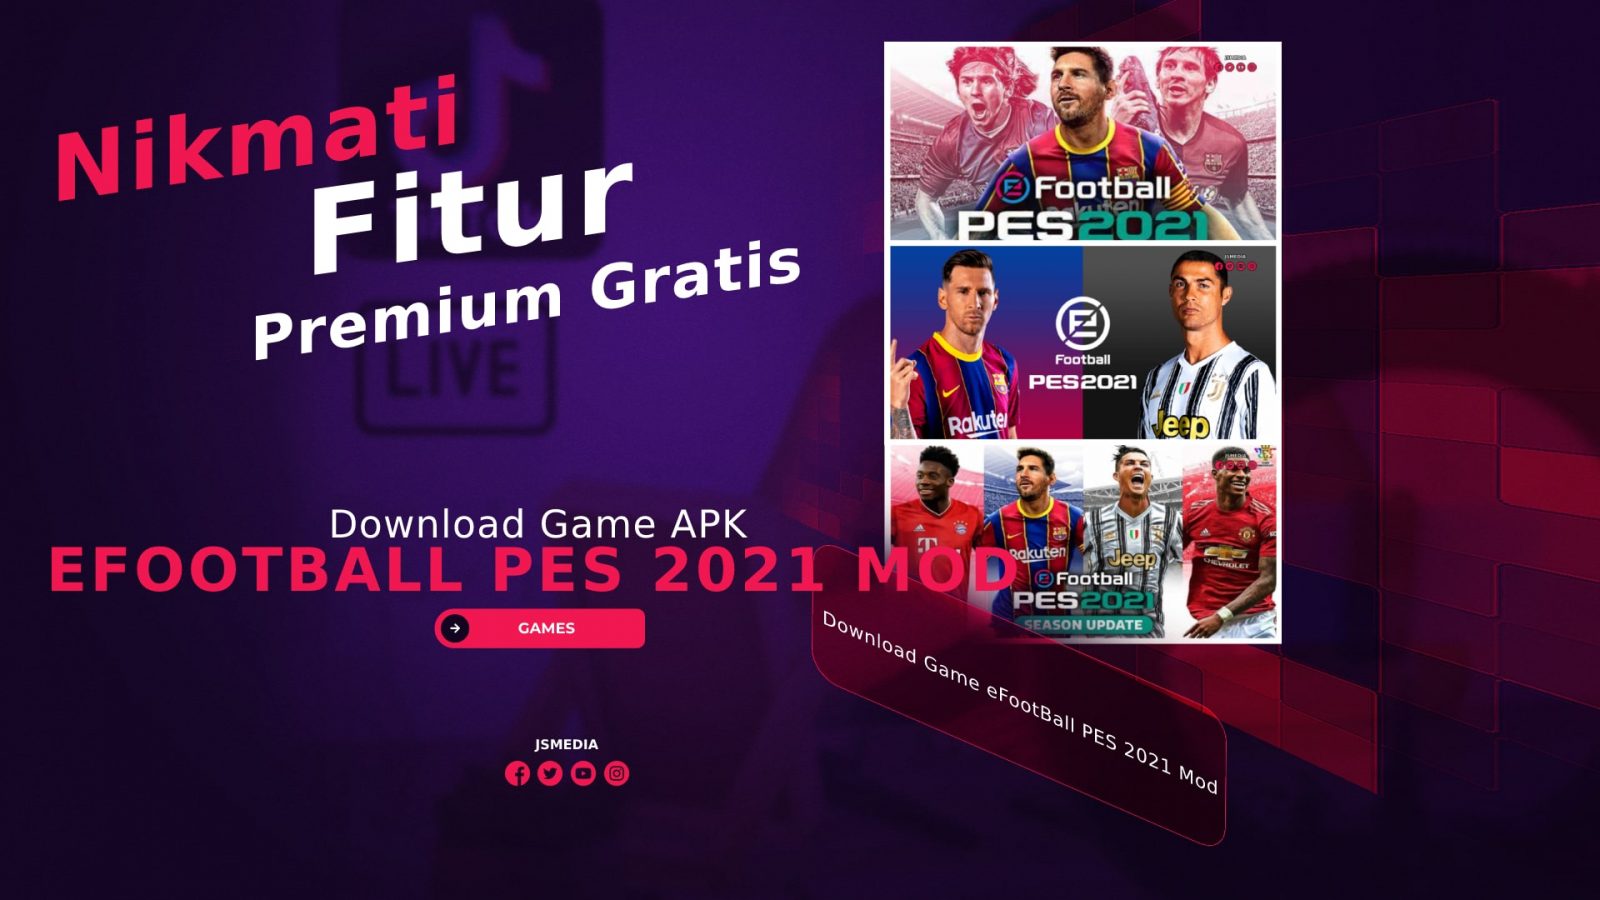 Download Game eFootBall PES 2021 Mod Apk Gratis, Nikmati Fitur Premium